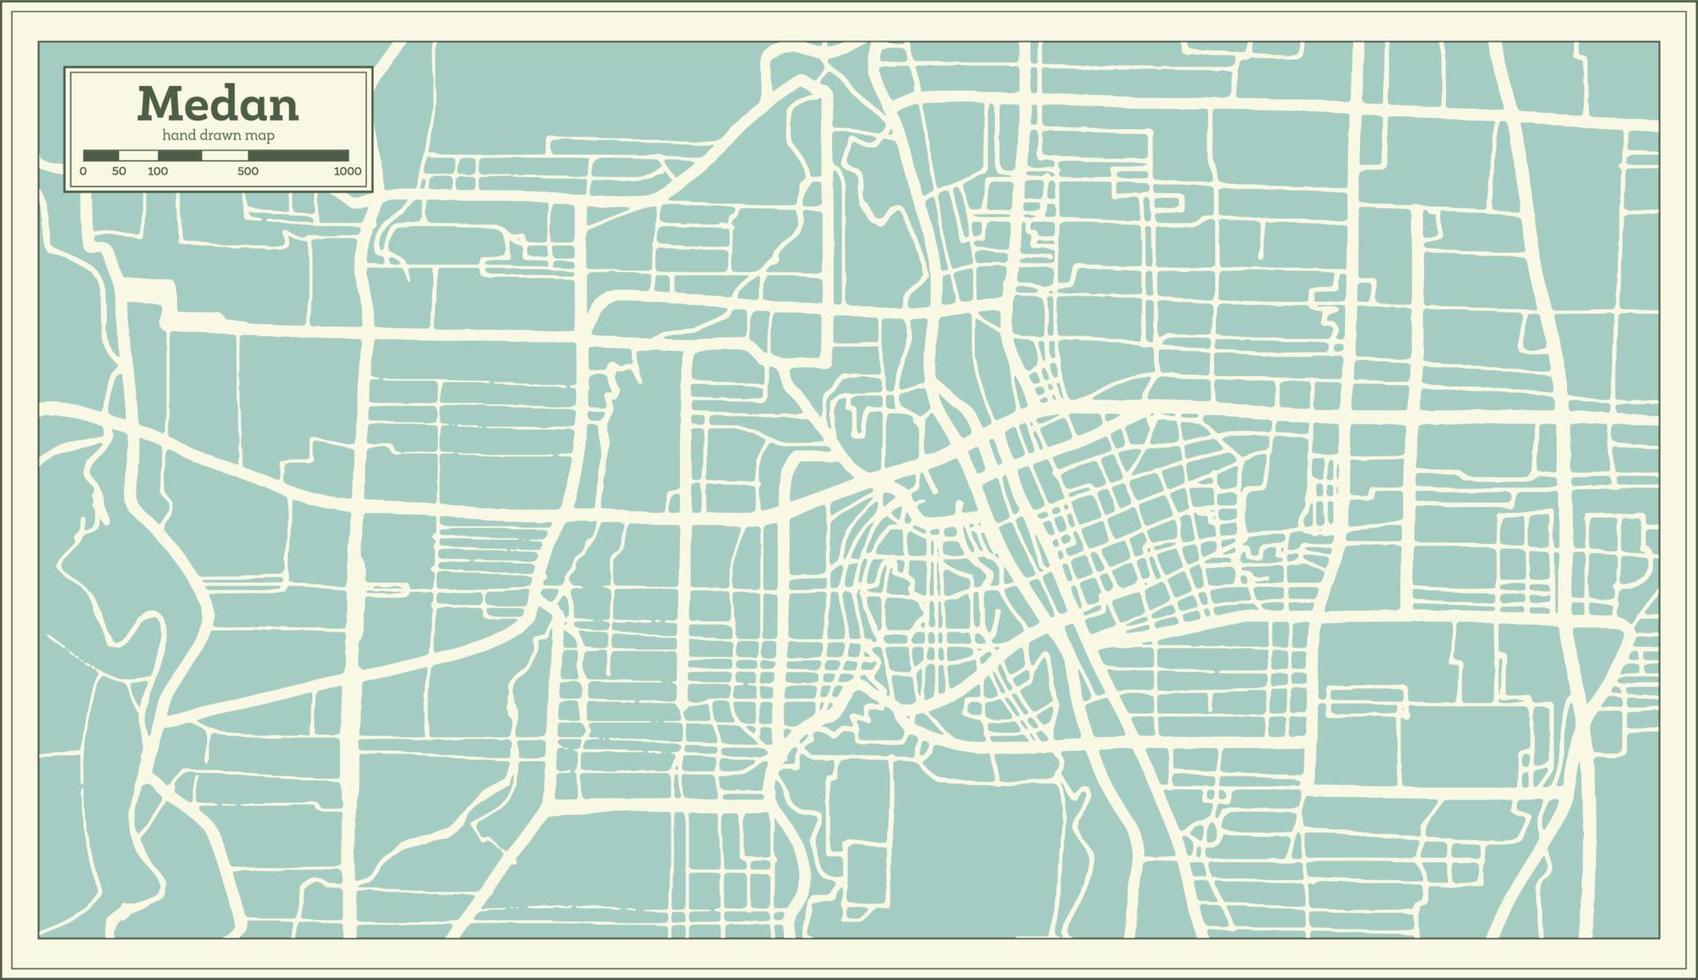 plan de la ville de medan indonésie dans un style rétro. carte muette. vecteur